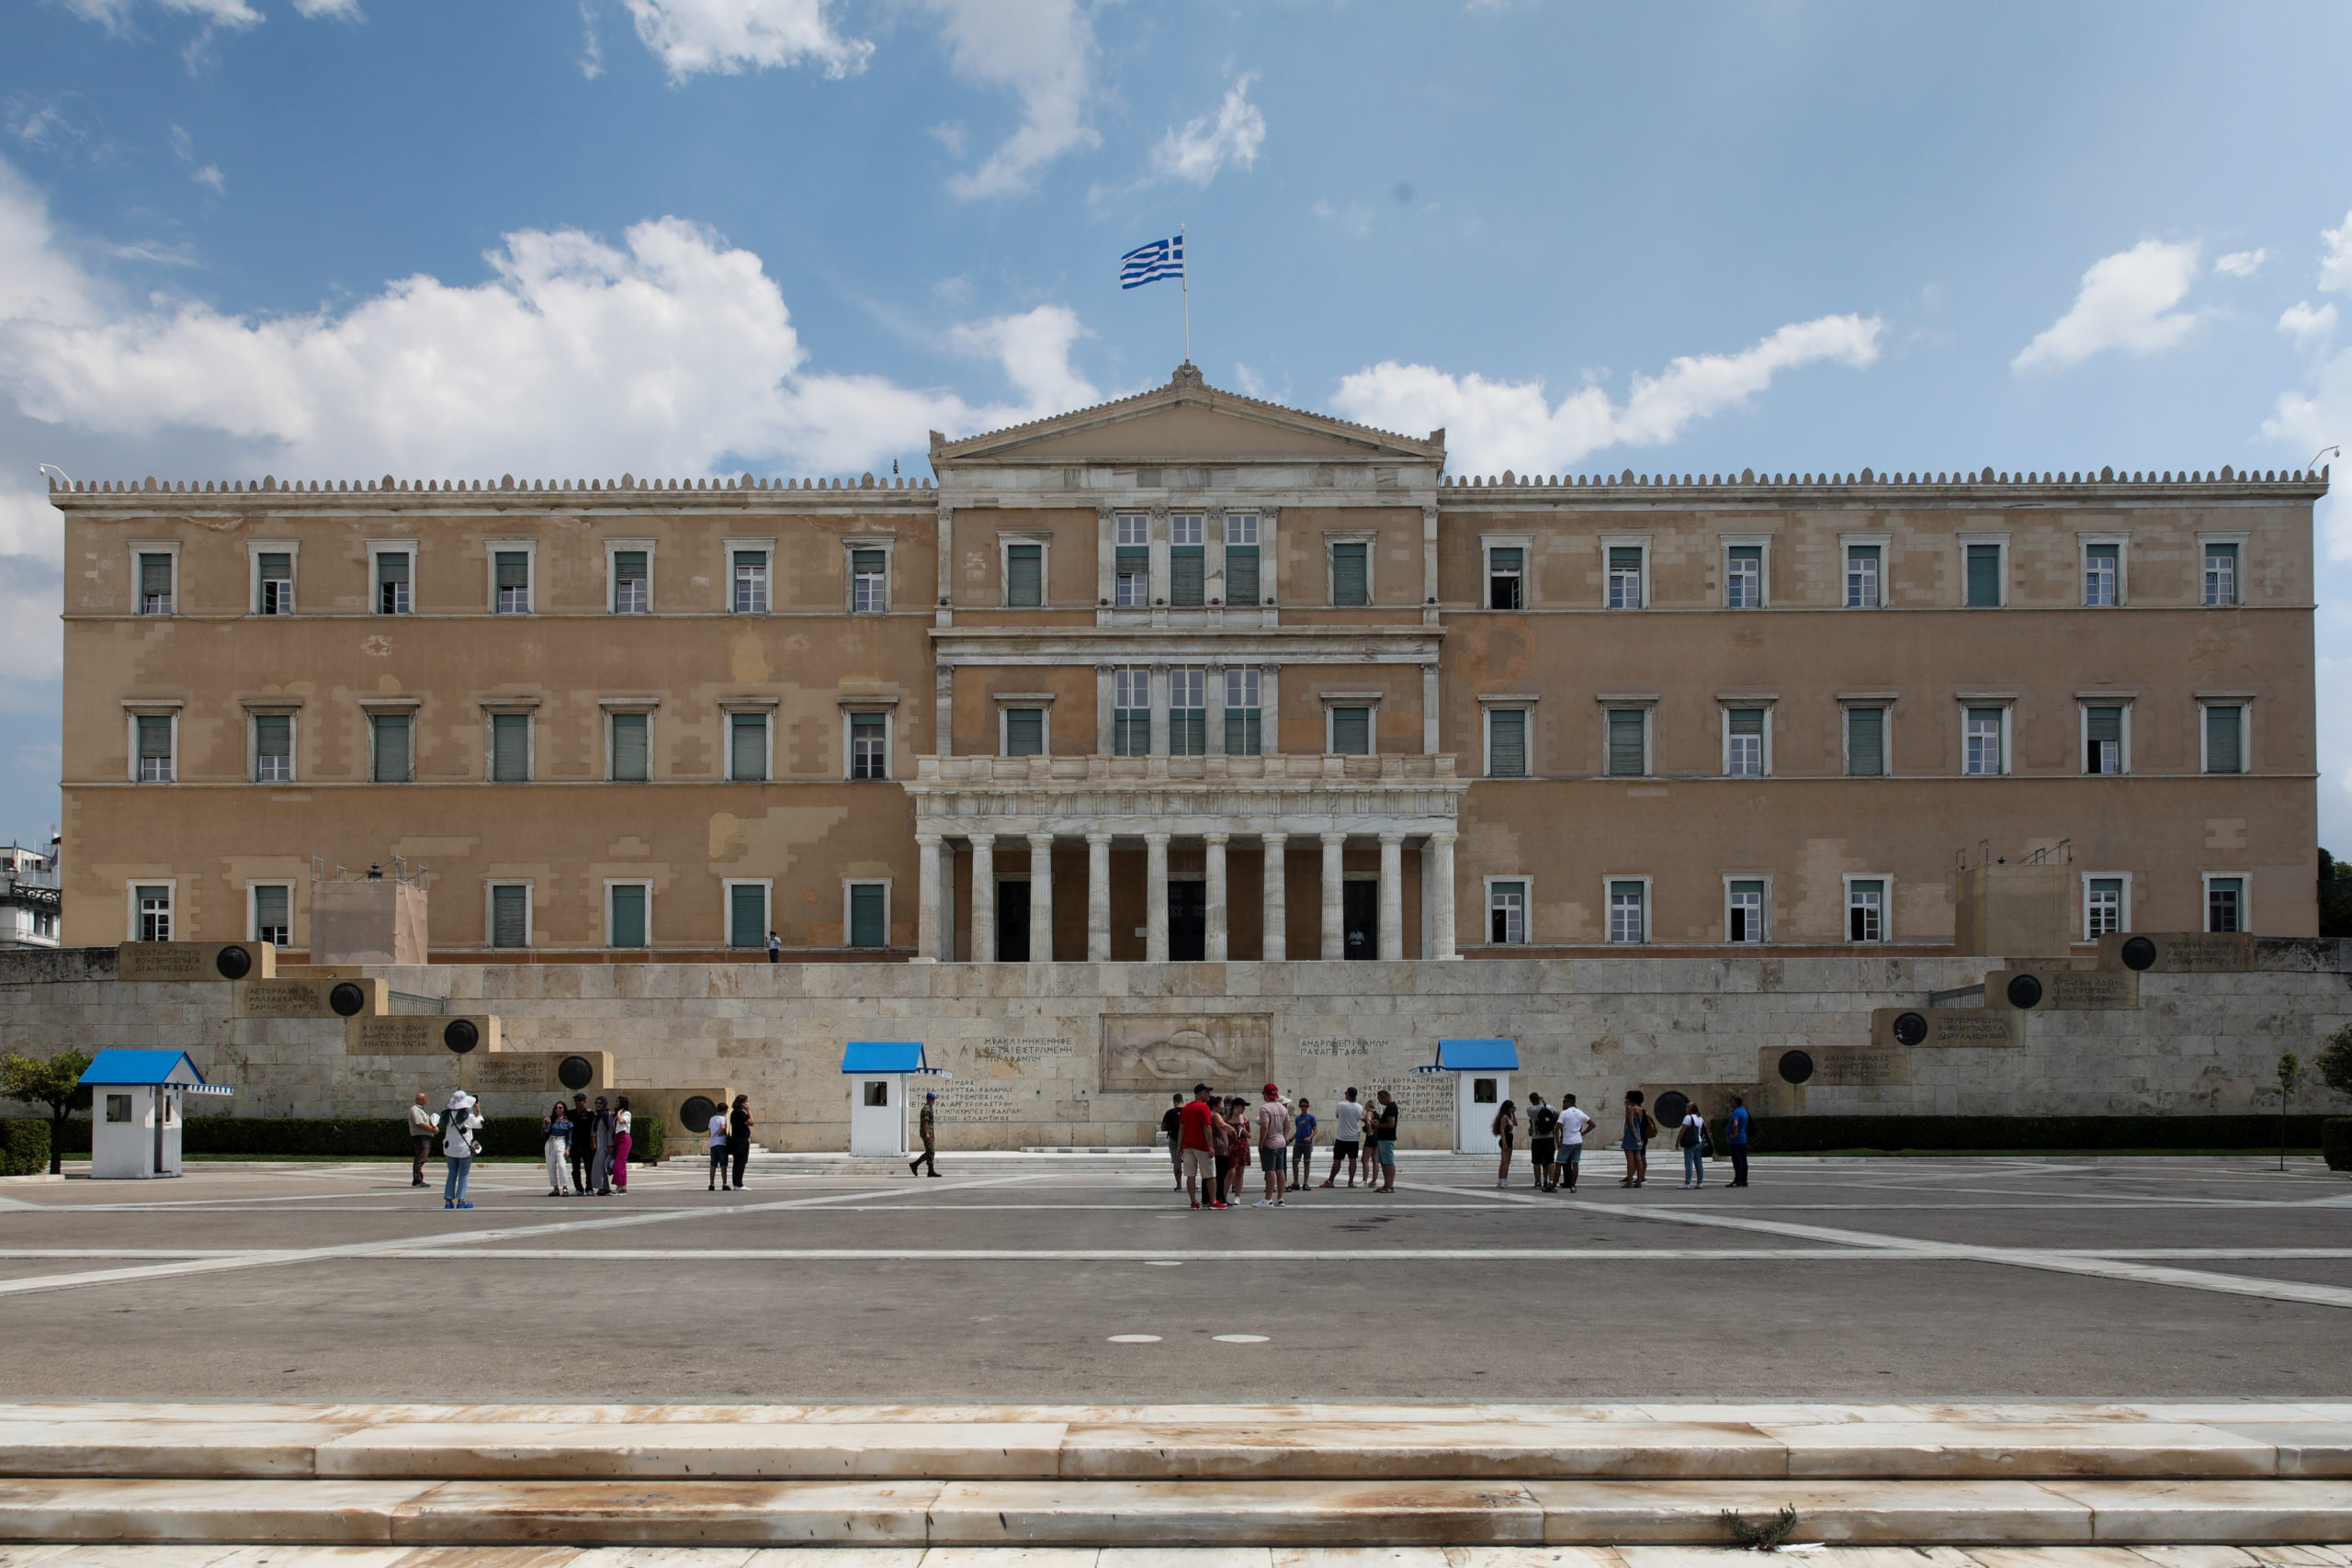 Κ.Ο. Νέας Δημοκρατίας : Ο ΣΥΡΙΖΑ παραβίασε το απόρρητο και ευτέλισε μια σημαντική κοινοβουλευτική διαδικασία